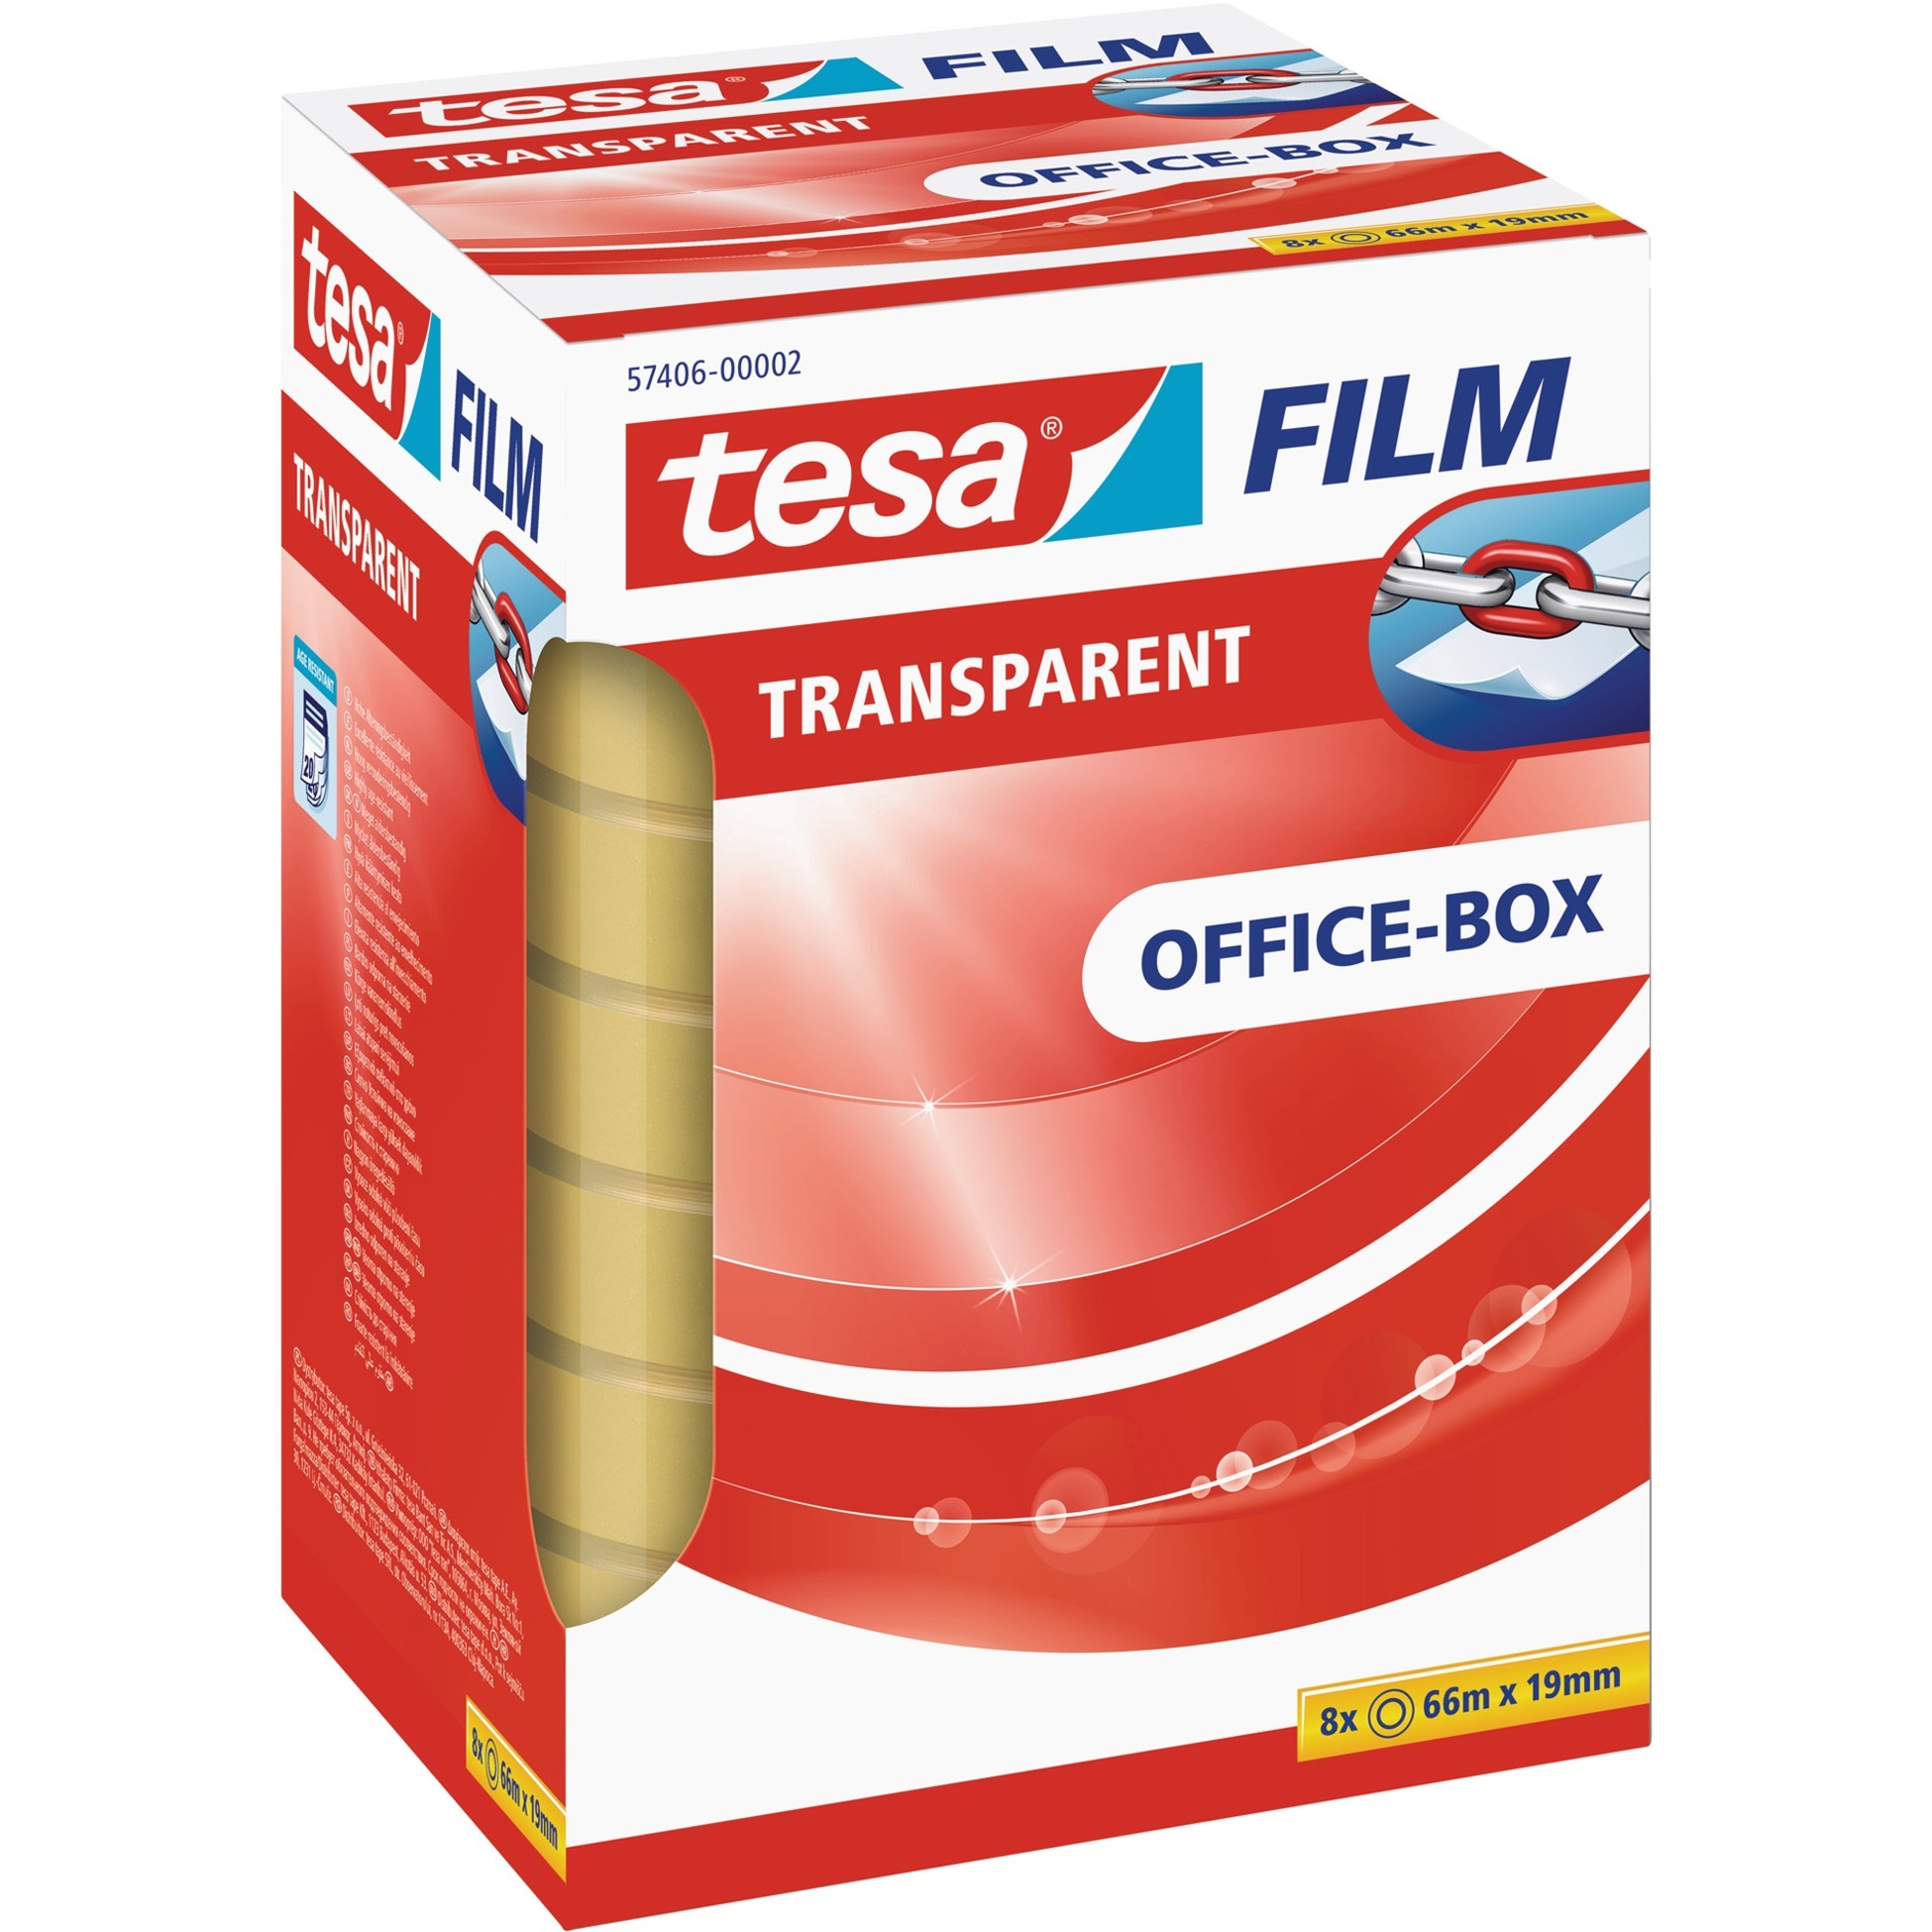 Image of Alternate - tesafilm transparent, 8 Rollen, 19mm, Office Box, Klebeband online einkaufen bei Alternate